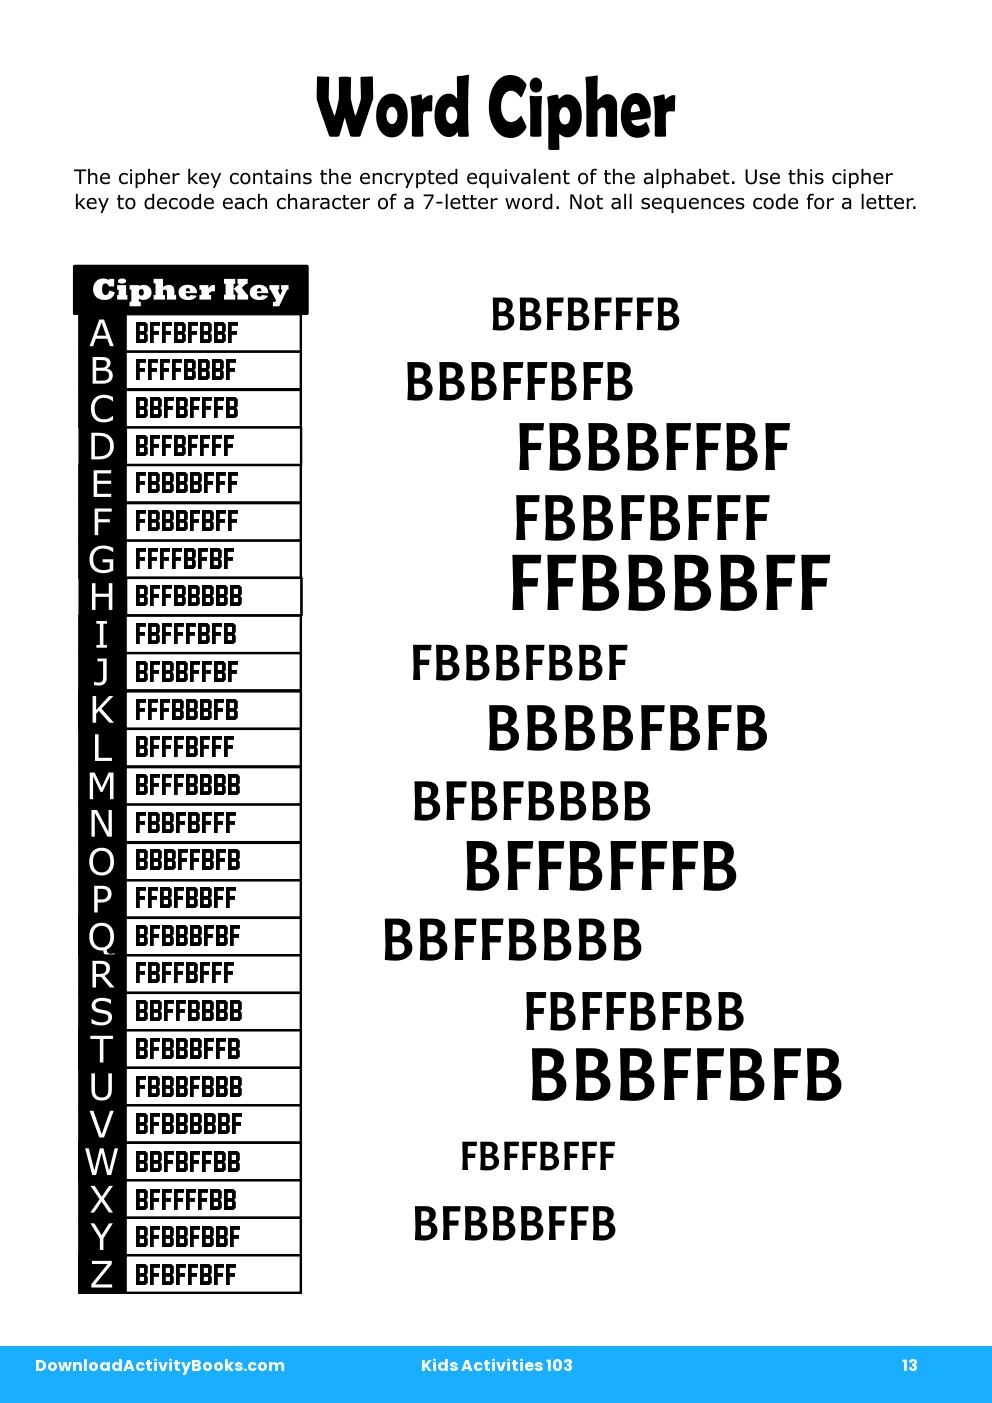 Word Cipher in Kids Activities 103